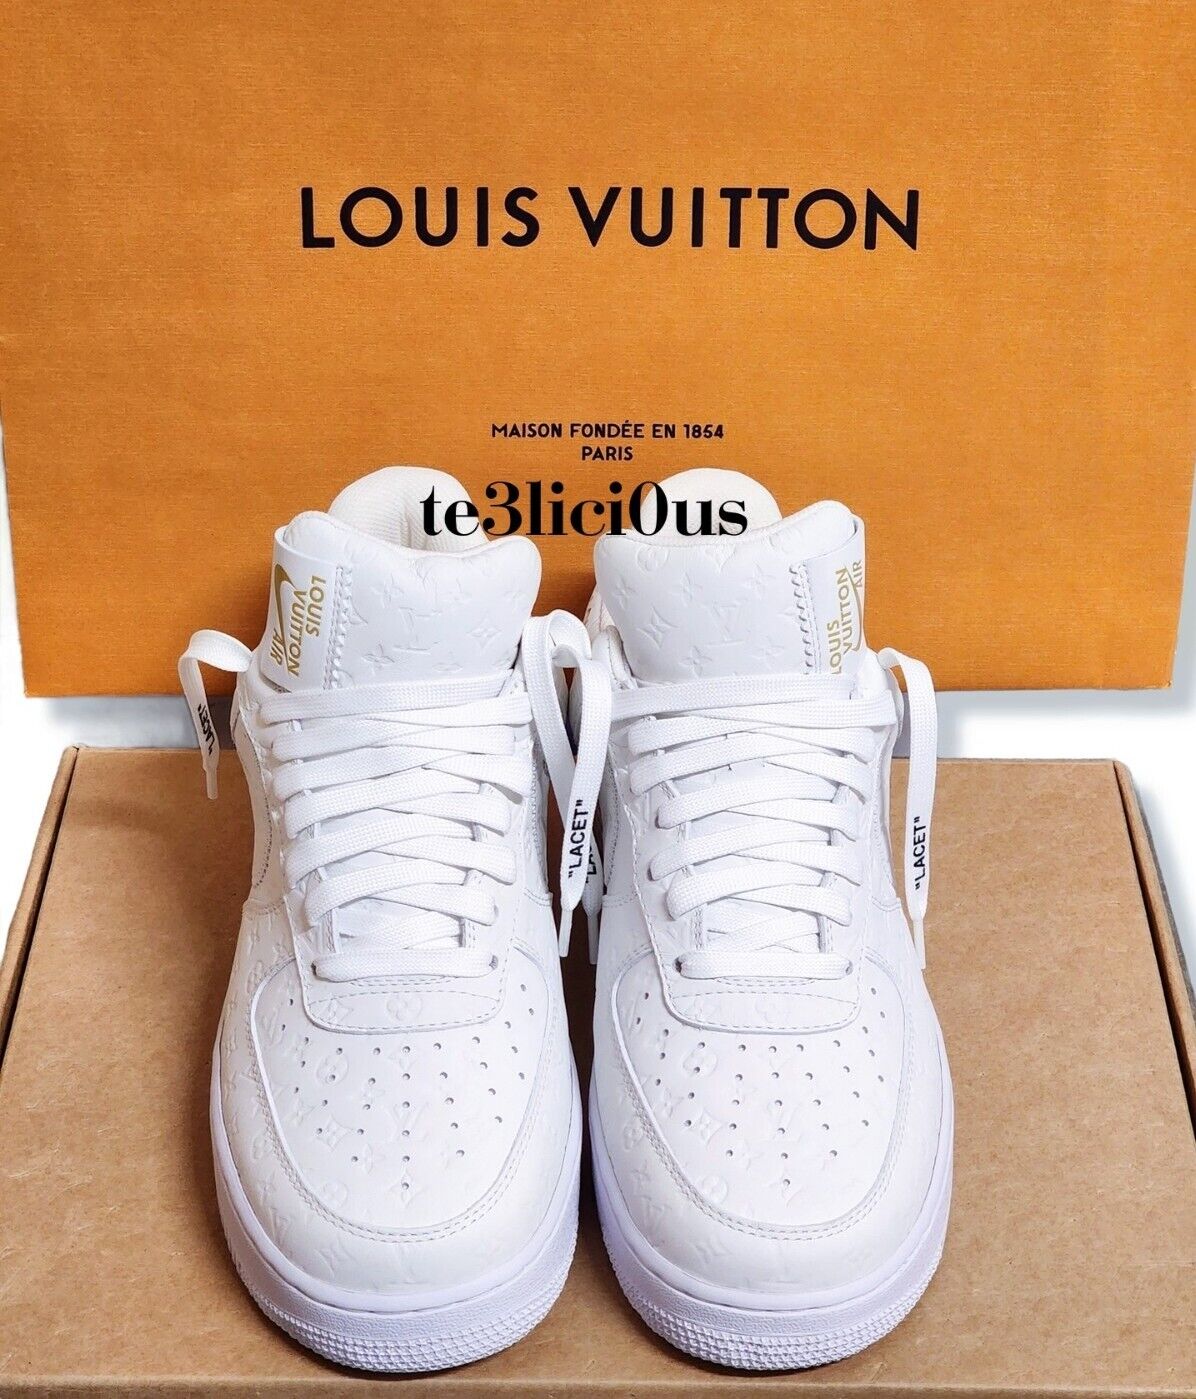 Louis Vuitton x Nike Air Force 1 Low “Triple White” by Virgil